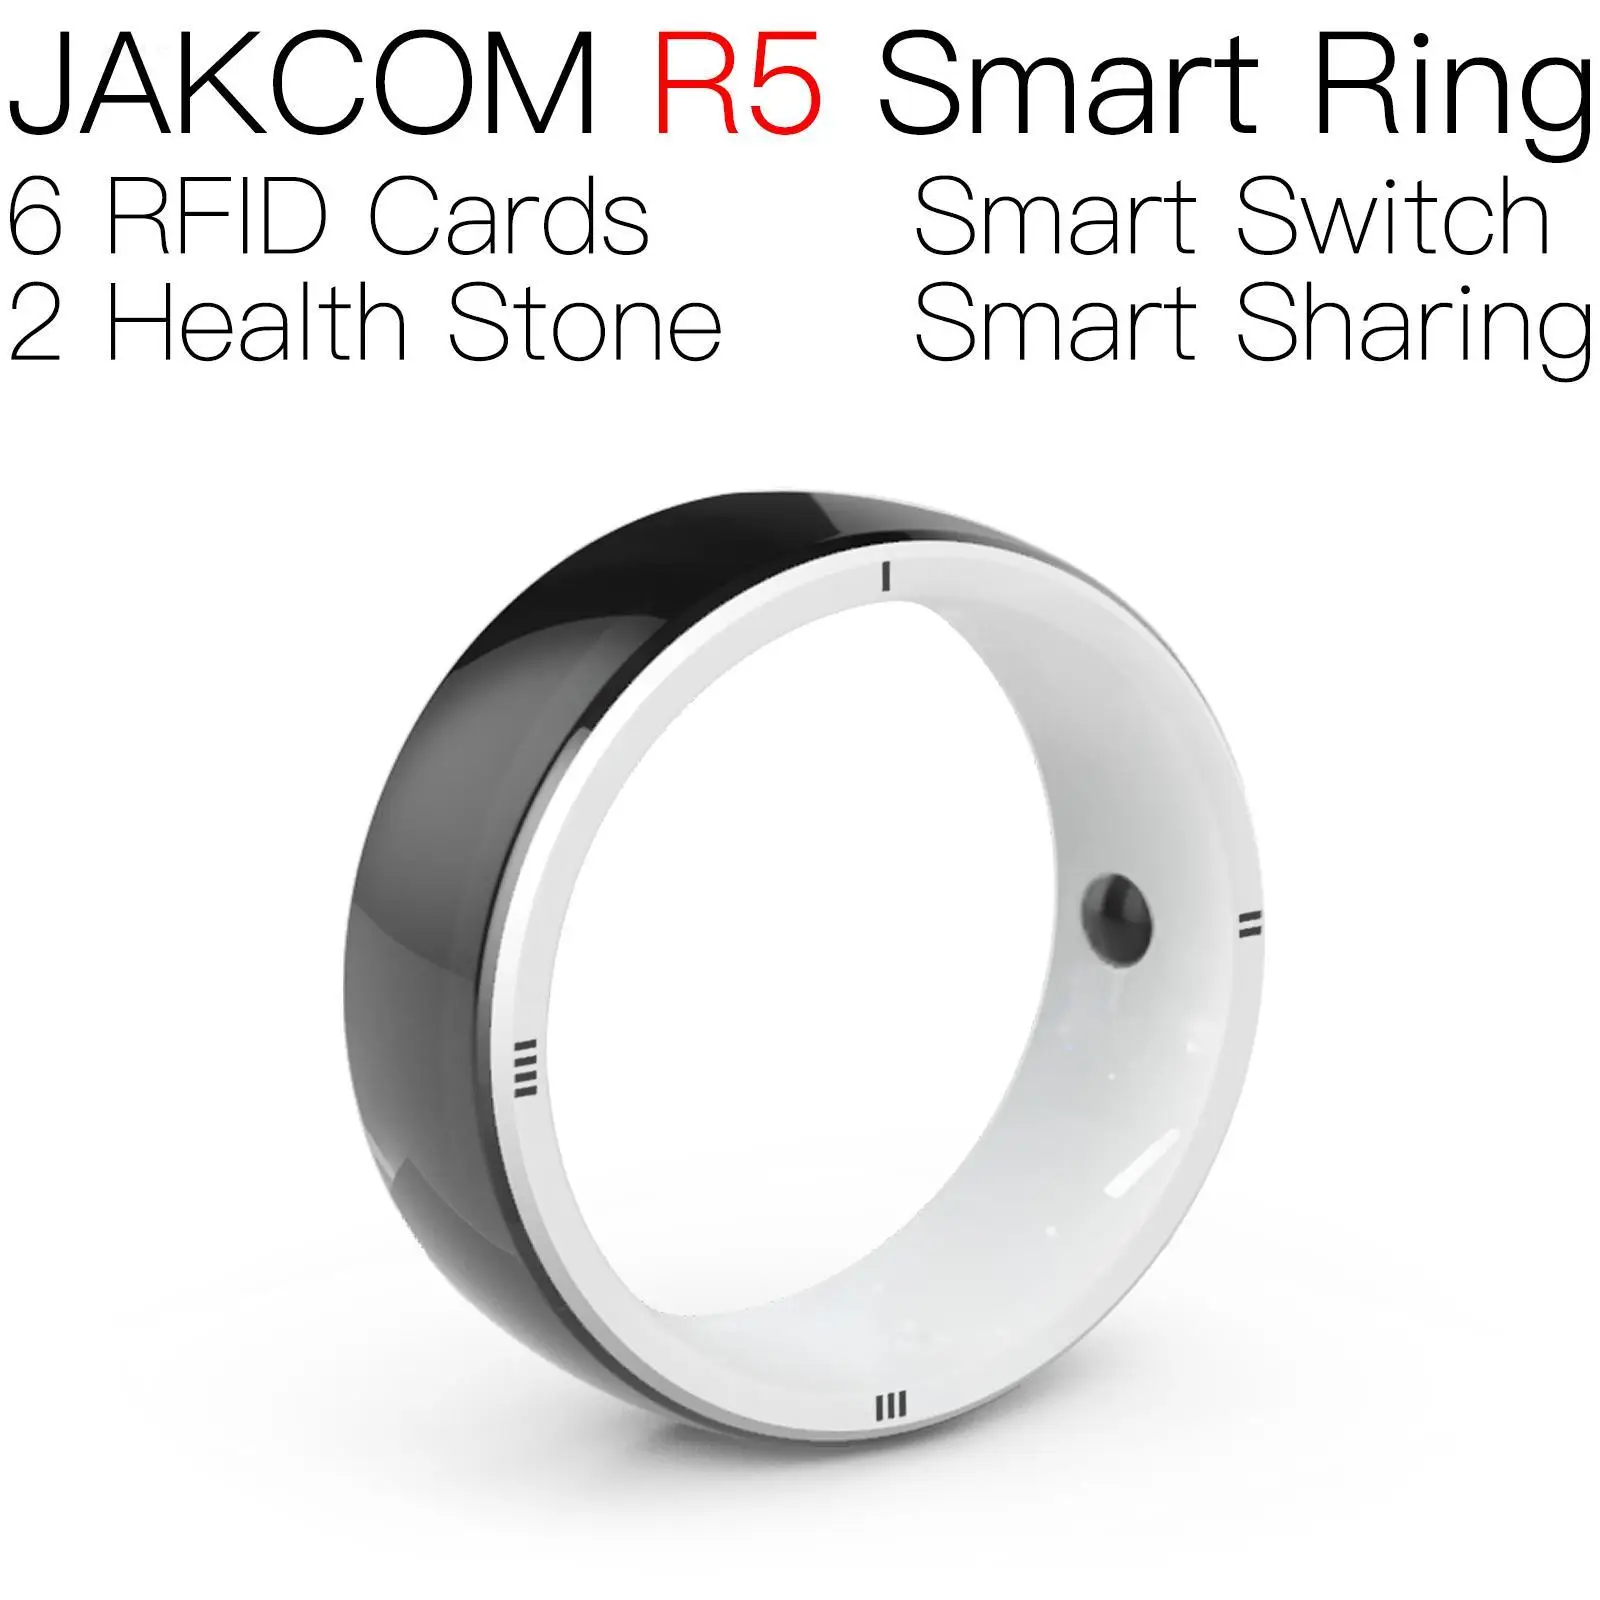 

Умное кольцо JAKCOM R5, лучше чем 1 месяц, наклейка, считыватели, бирка, Радиочастотная Идентификация 125, эмбобо paulino 900, доступ к автомобильной карте